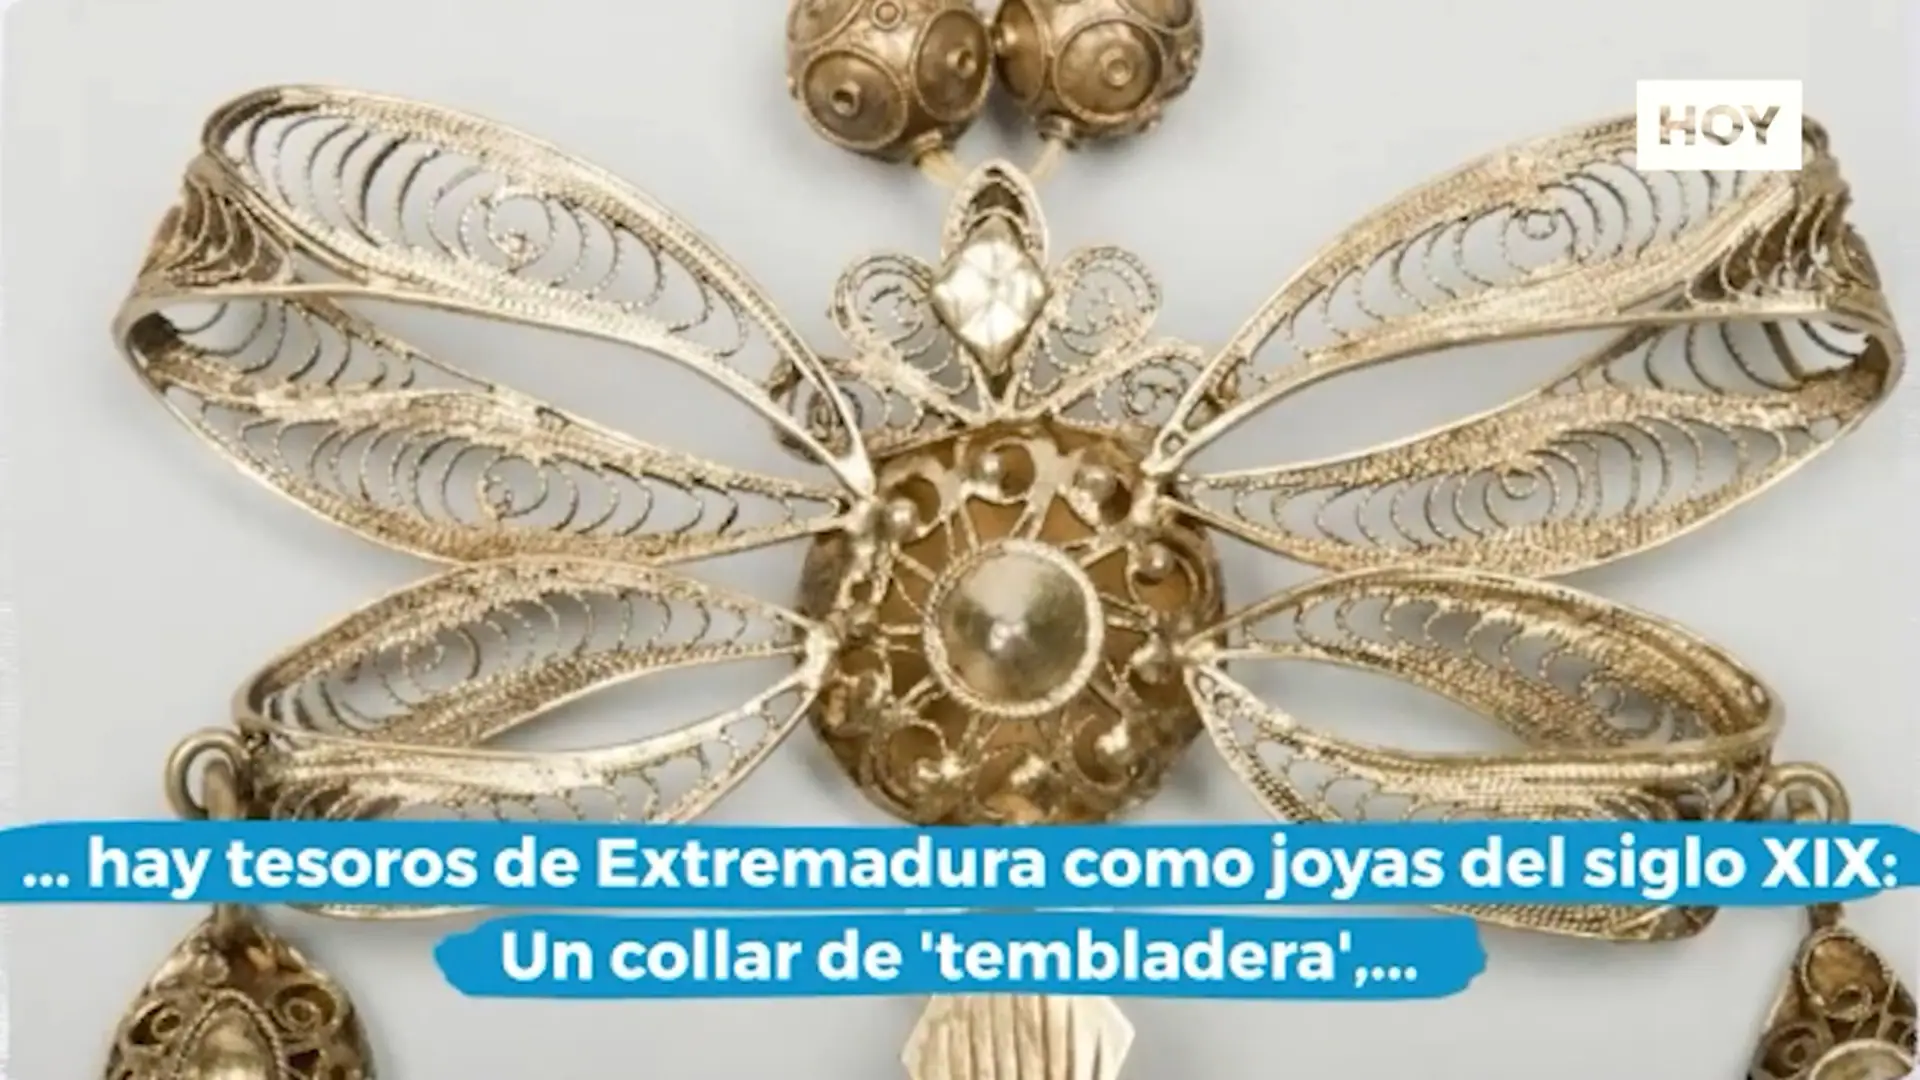 Sonajeros extremeños para evitar la muerte y joyas de Cáceres en El Sorolla